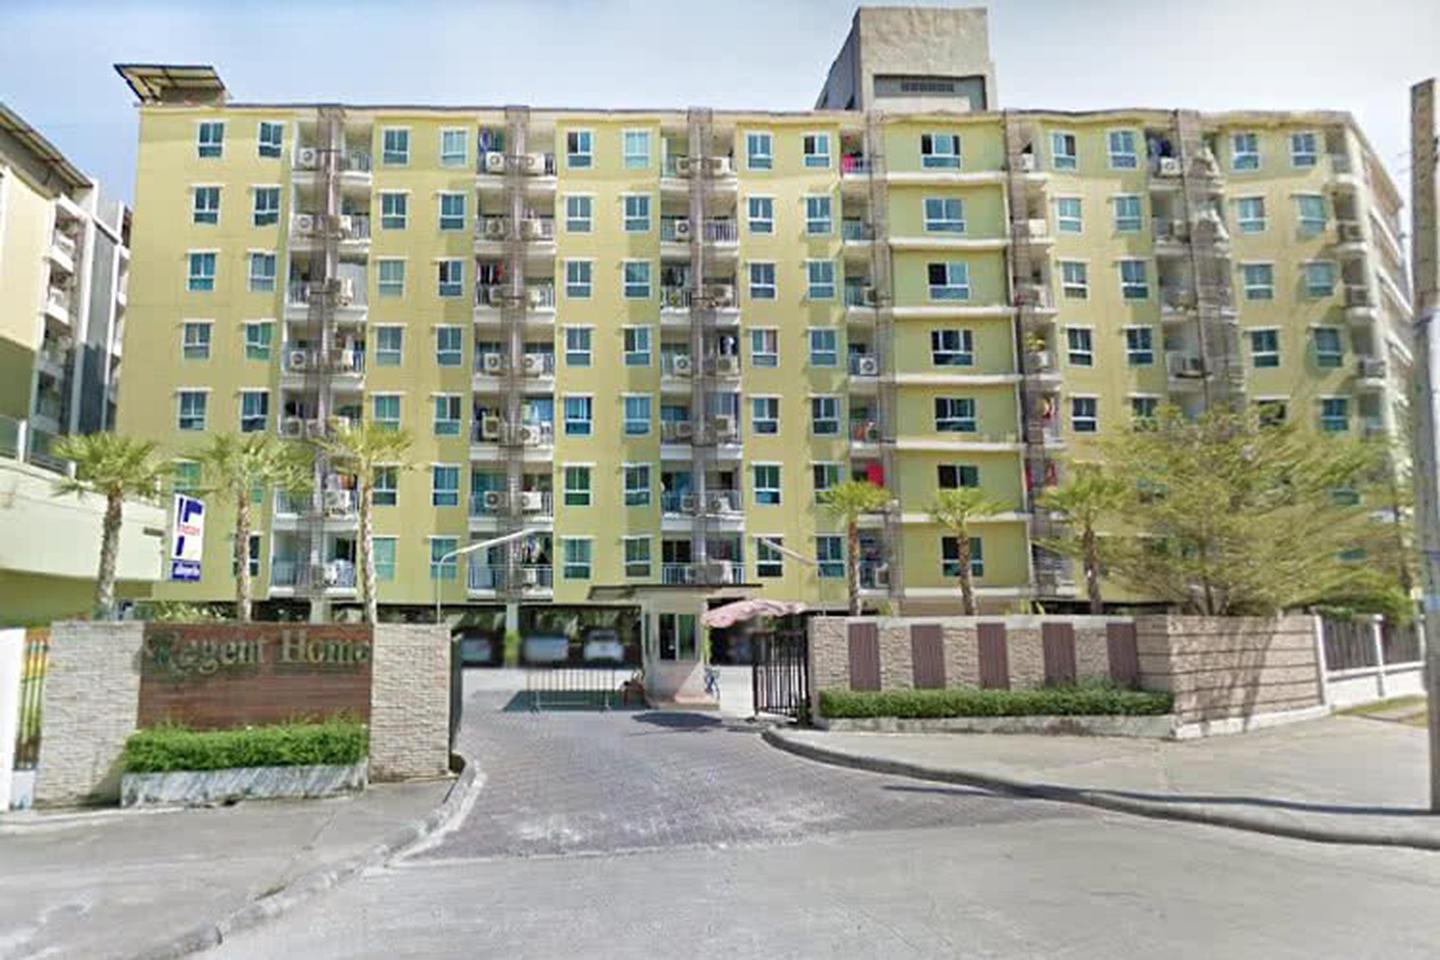 ให้เช่าคอนโดรีเจ้นท์โฮม 7/2 (สี่แยกบางนา) Regent Home Condominium 7/2 ราคา 6,000 บาทต่อเดือน รูปเล็กที่ 2